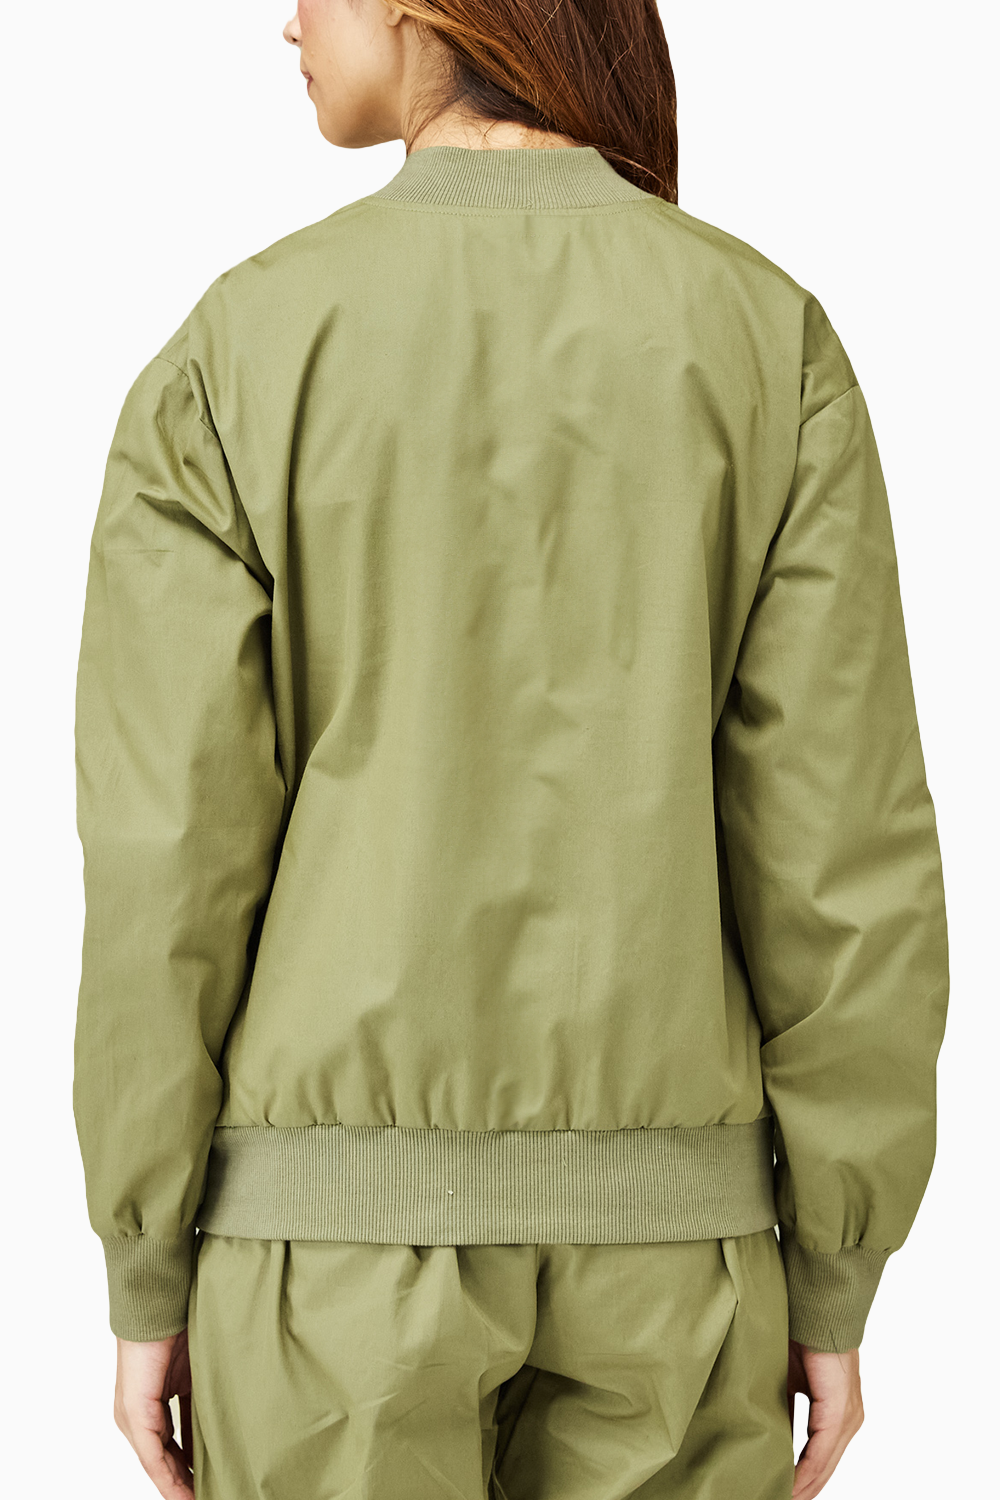 Khaki Green Everyday Jacket